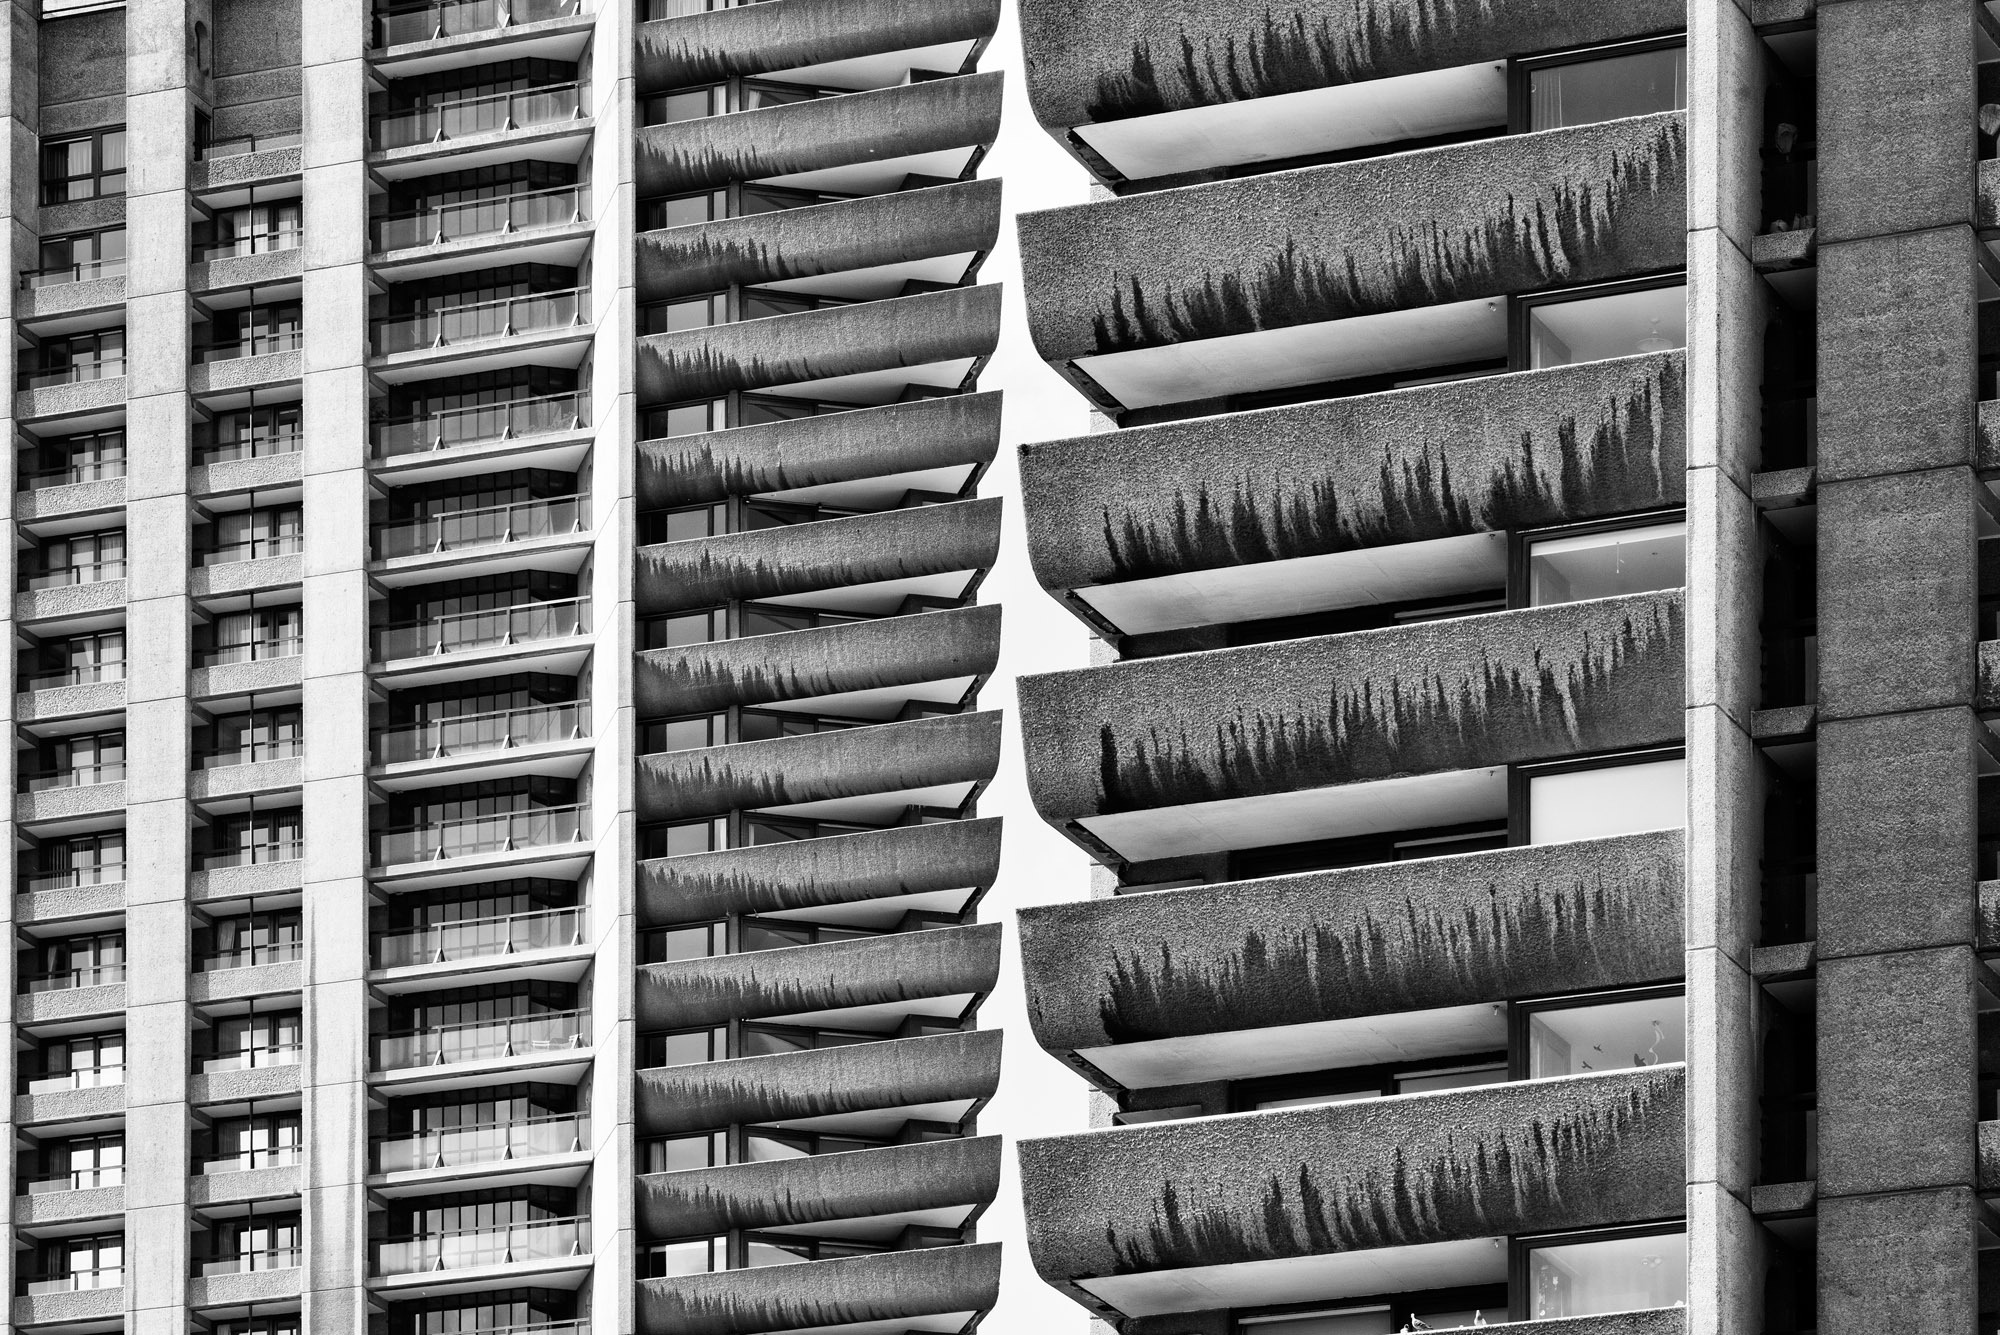 Architecture Building Block Of Flats Brutalism Barbican London UK Monochrome Balcony Lines Concrete  2000x1335